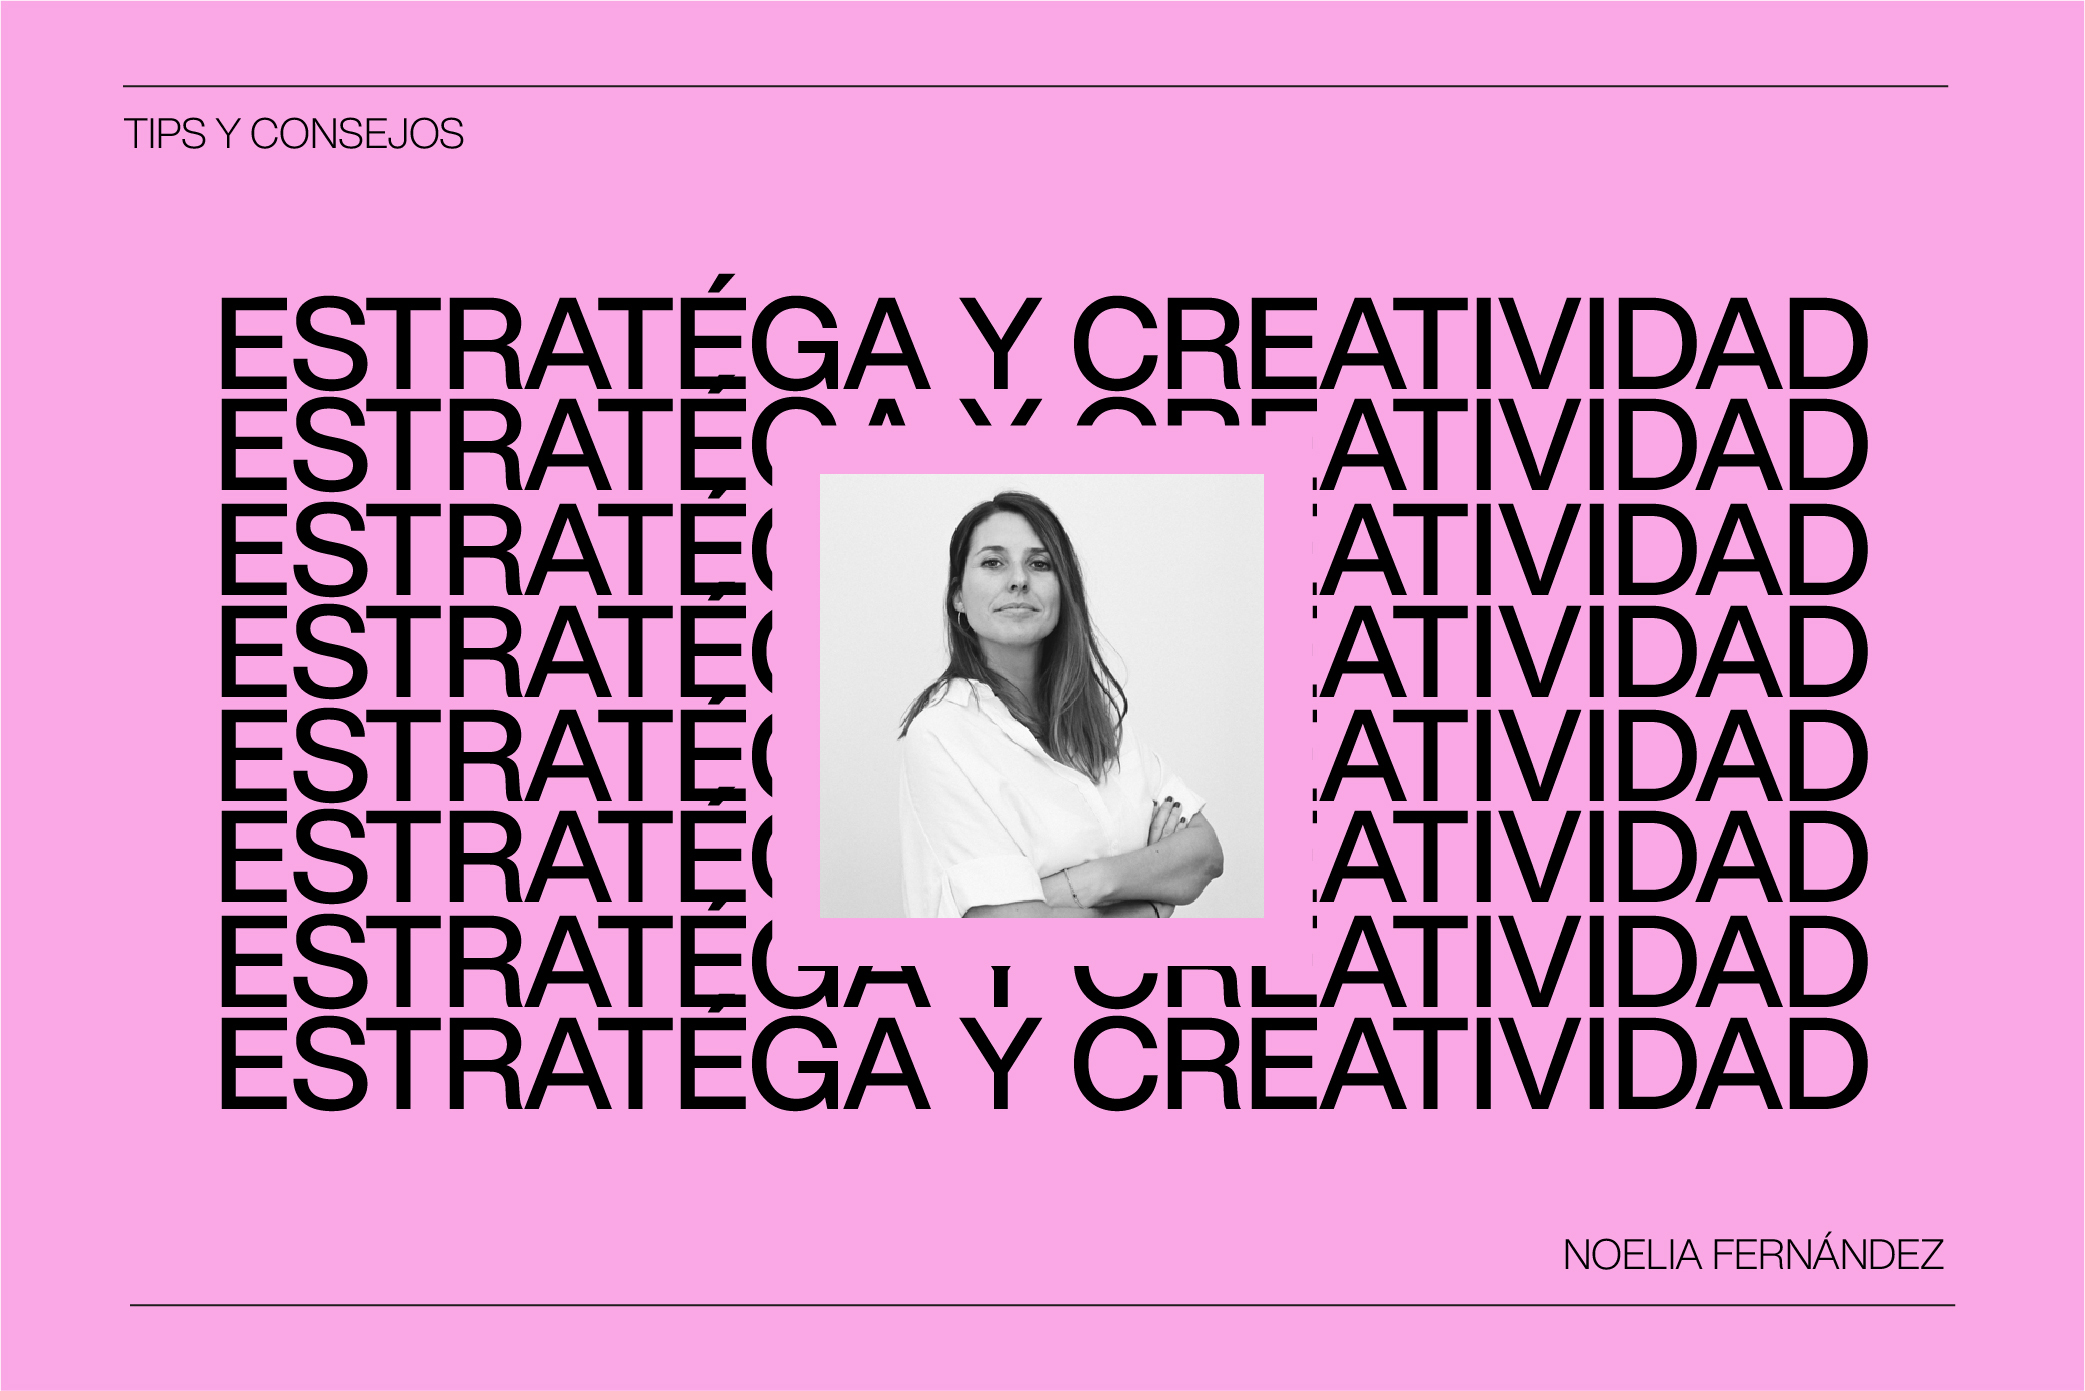 ¿Cómo combinar Estrategia y Creatividad? Con Noelia Fernández de Manifiesto